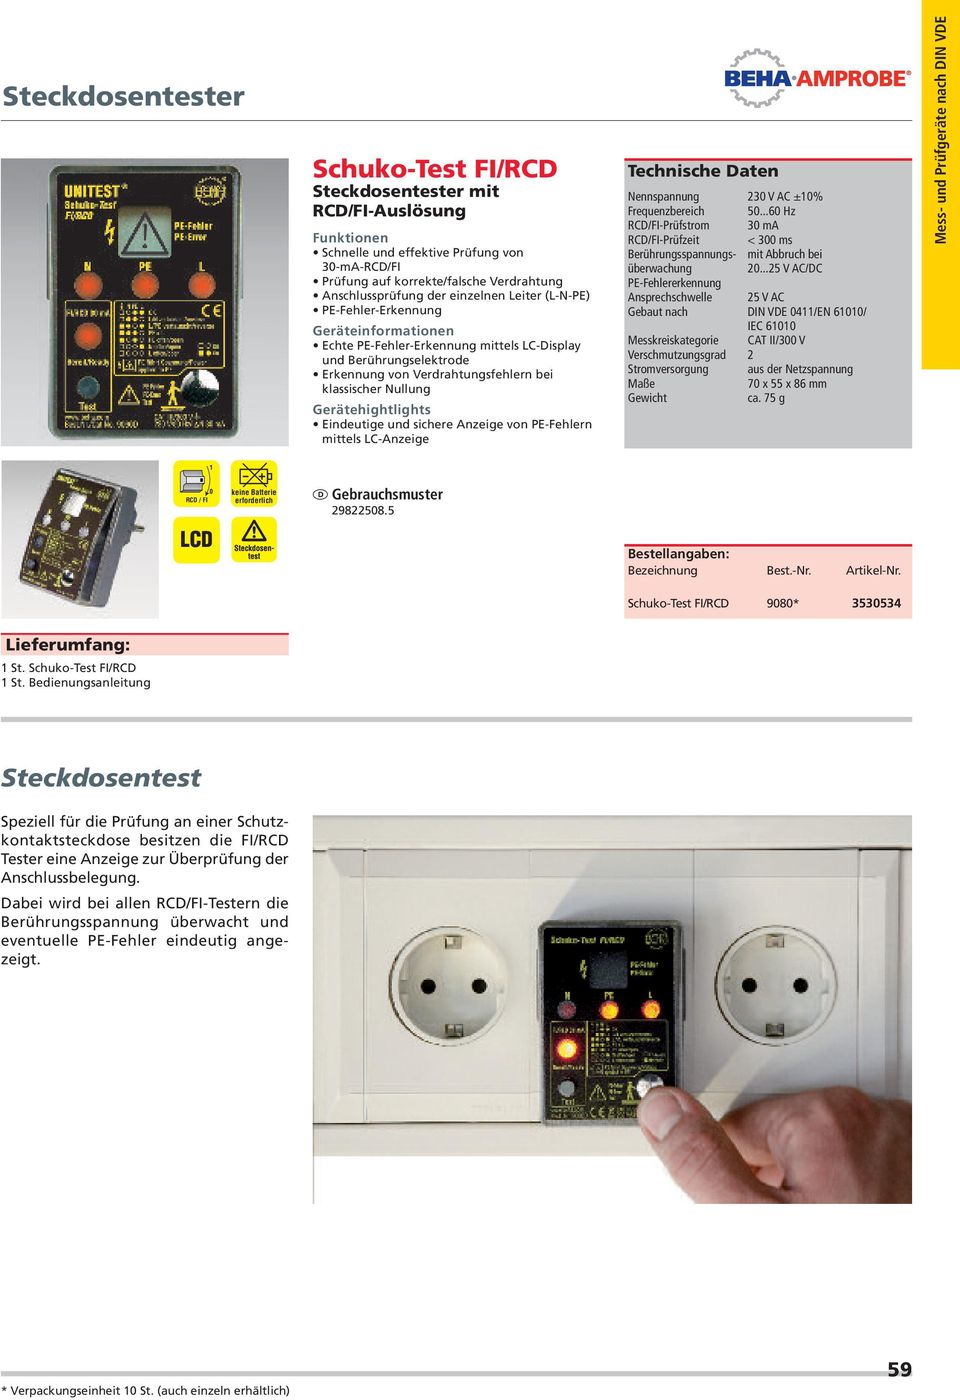 Gerätehightlights Eindeutige und sichere Anzeige von PE-Fehlern mittels LC-Anzeige Technische Daten Nennspannung 230 V AC ±10% Frequenzbereich 50.